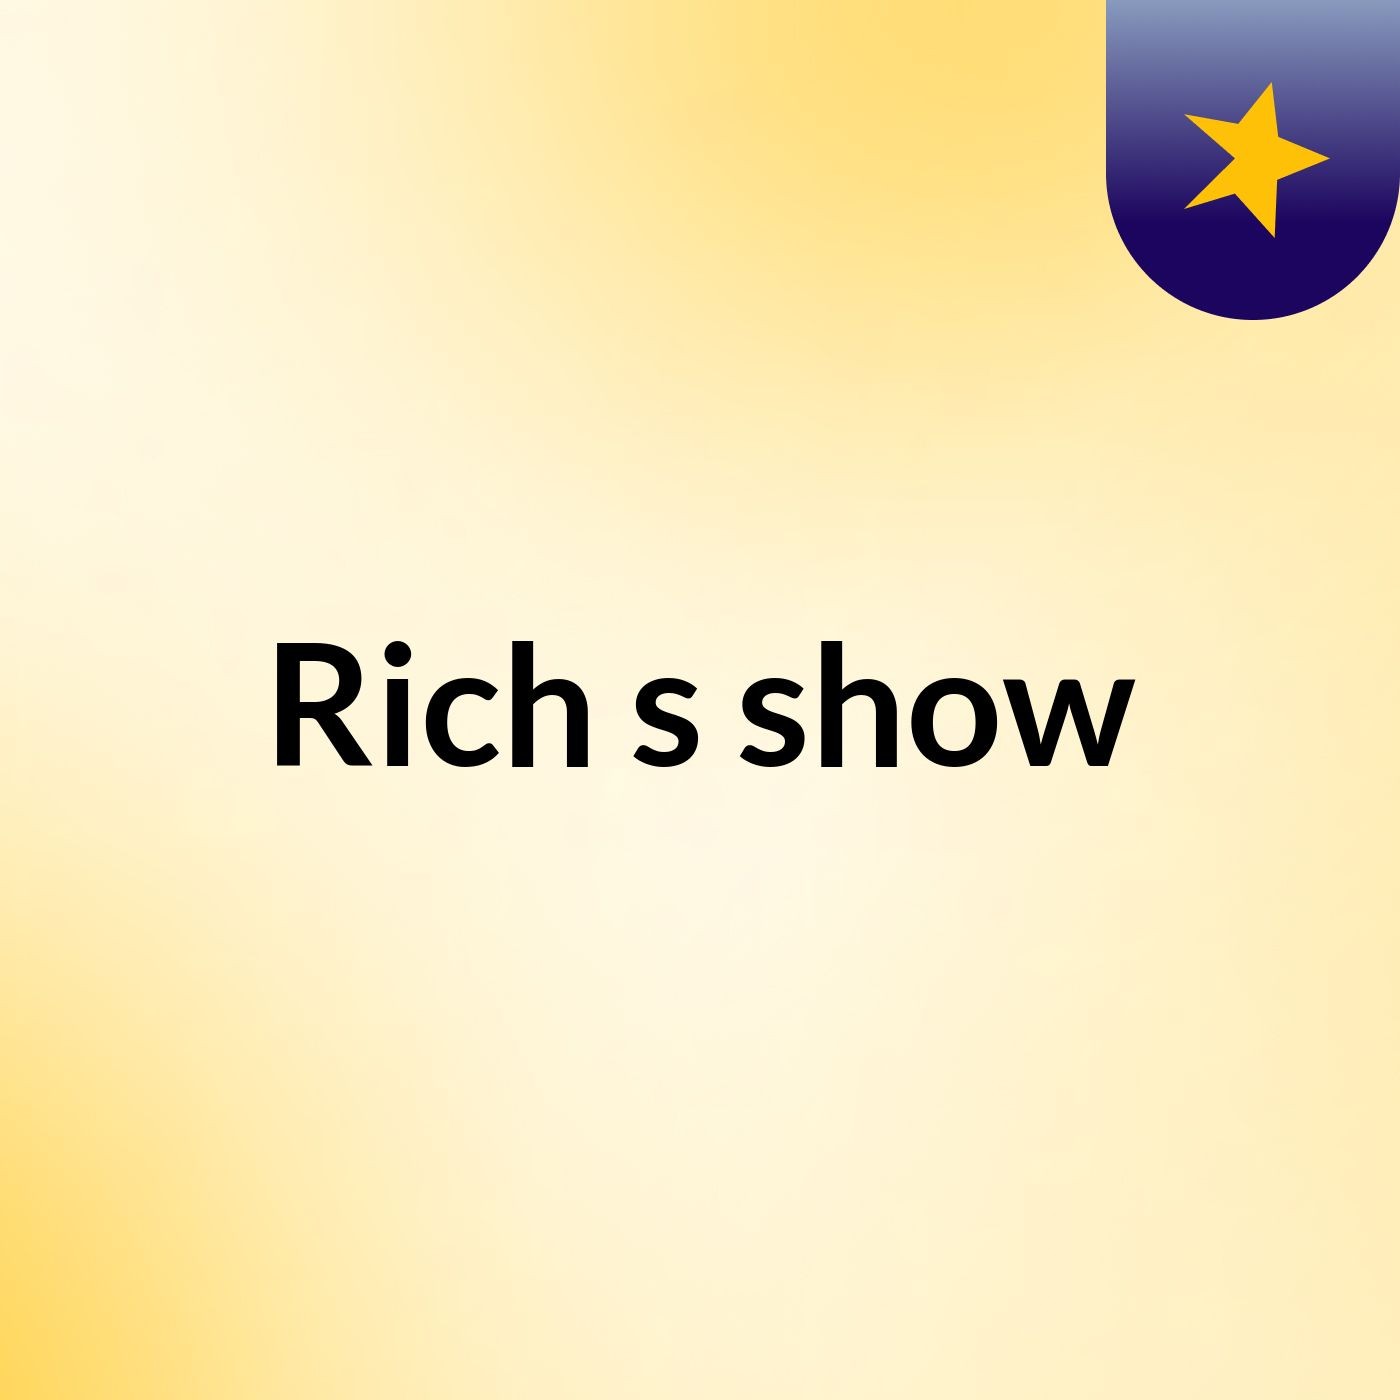 Episode 9 - Rich's show